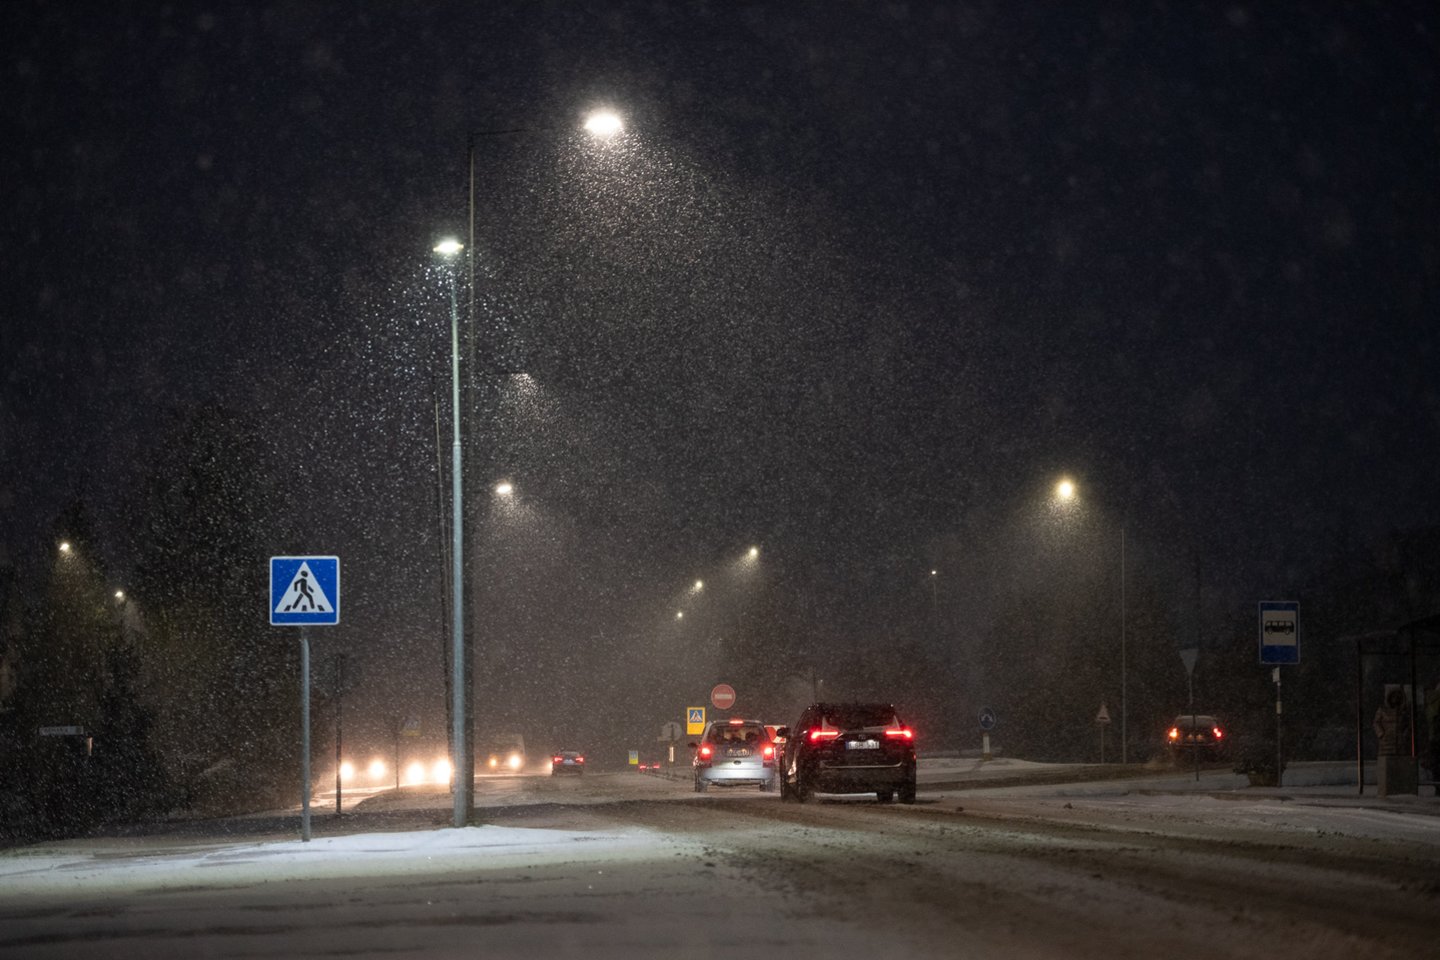 Lietuvos automobilių kelių direkcija informuoja, kad ketvirtadienio rytą eismo sąlygas šalyje sunkina snygis ir rūkas.<br>R.Vilkelio nuotr.